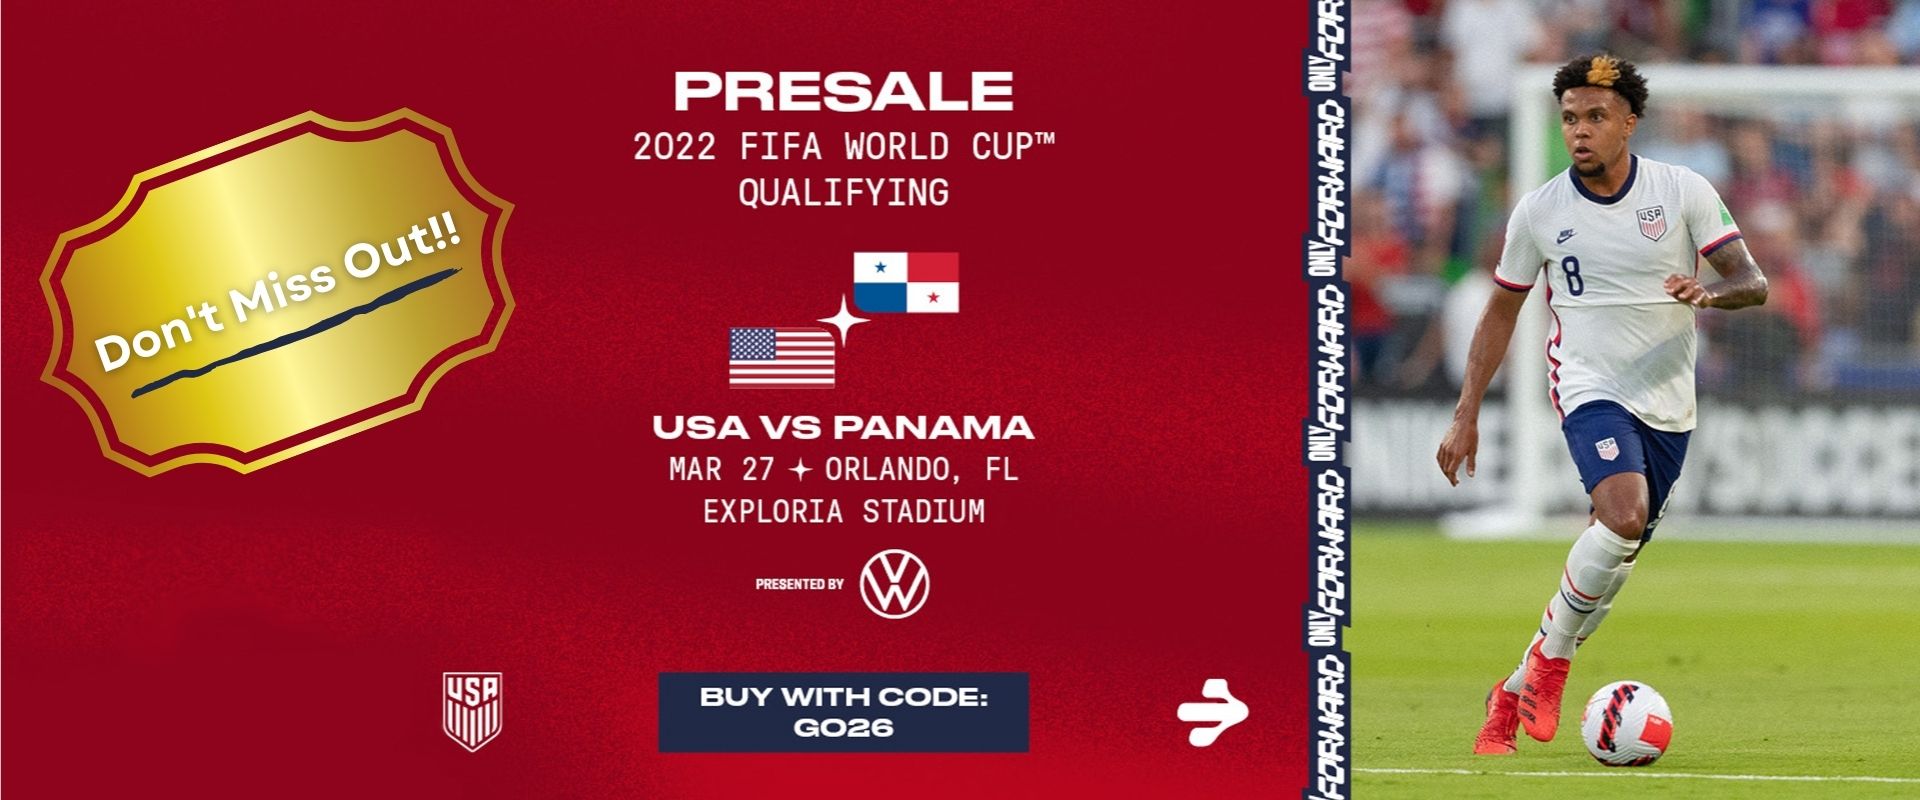 World Cup - USMNT Ticket Presale